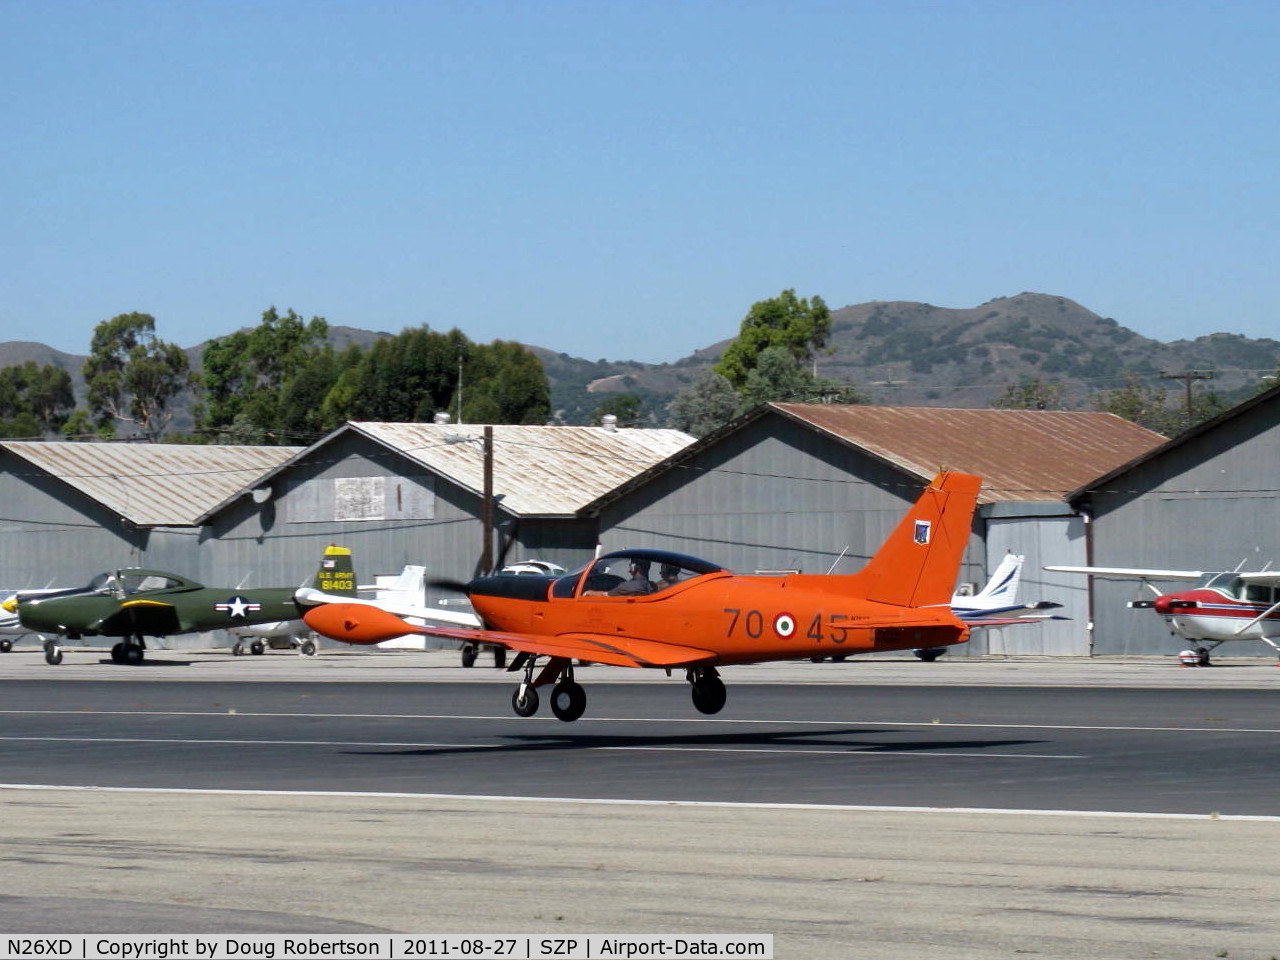 N26XD, 1987 SIAI-Marchetti F-260C C/N 40-016, 1987 SIAI Marchetti F.260C, Lycoming O-540-B4A5 260 Hp, landing Rwy 22